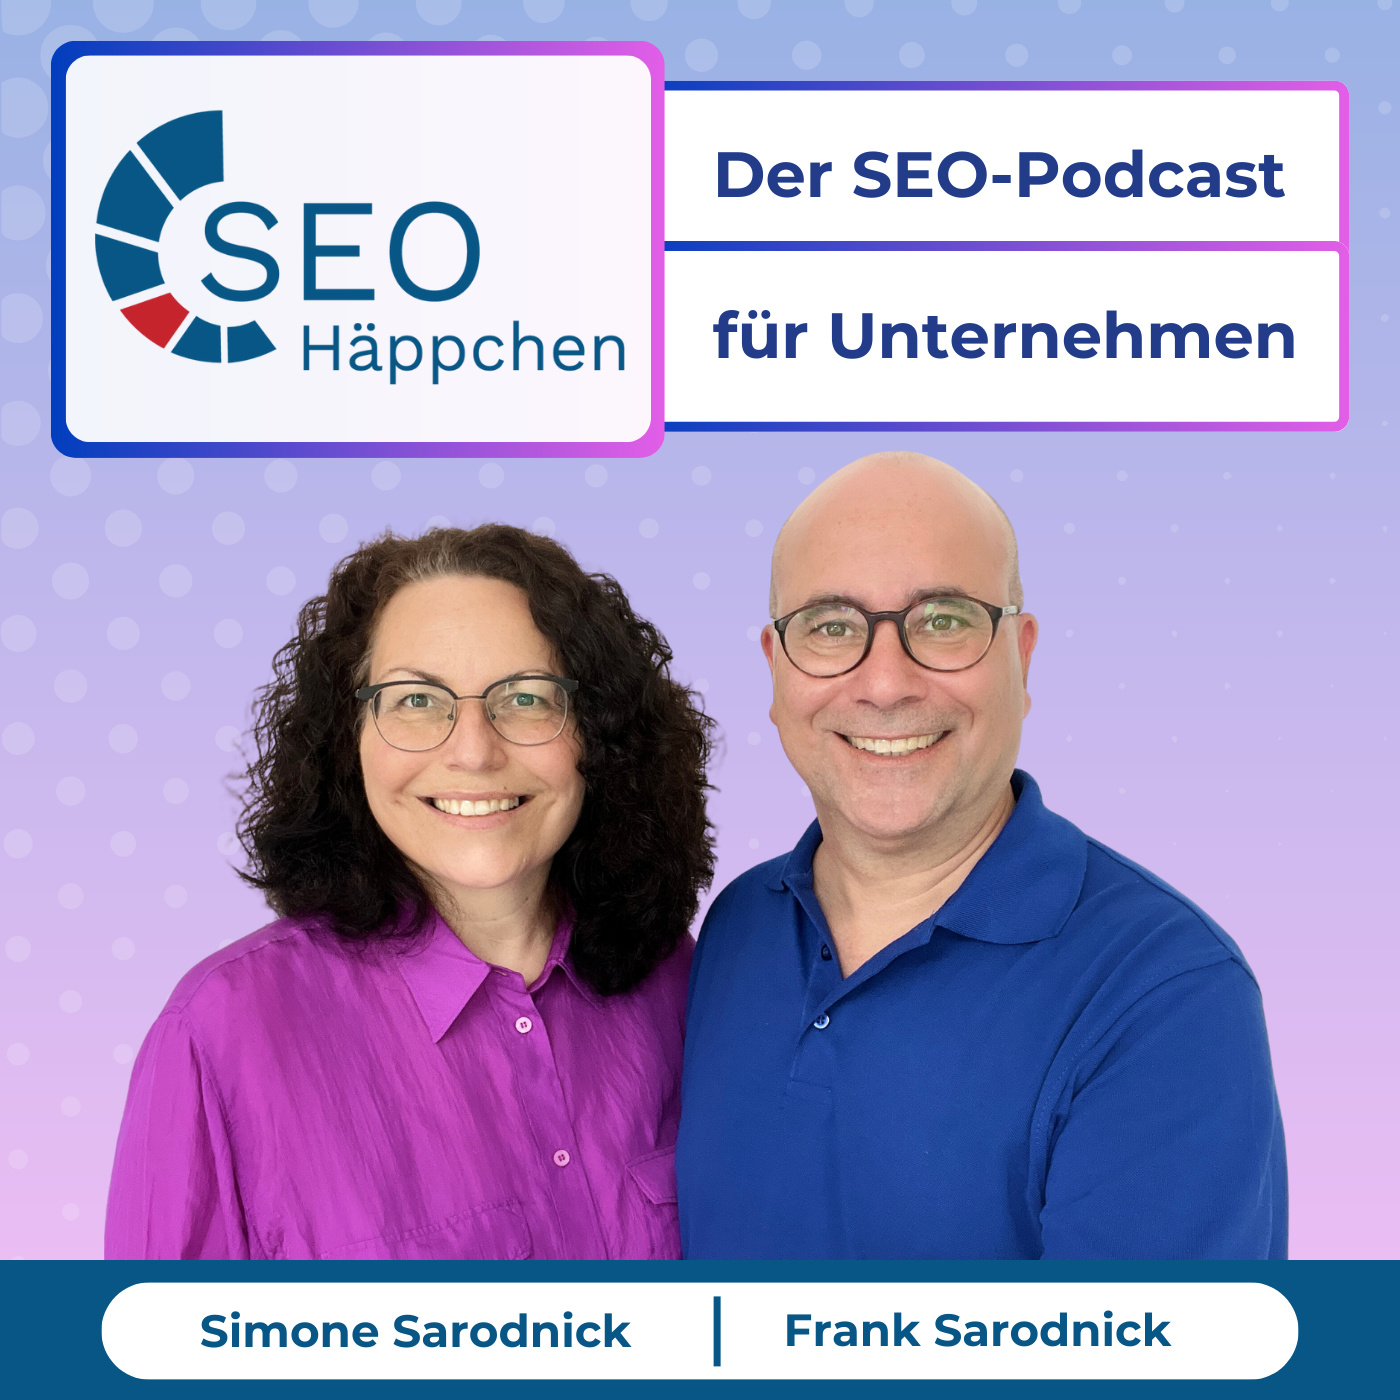 SEO Häppchen – Der SEO-Podcast für Unternehmen